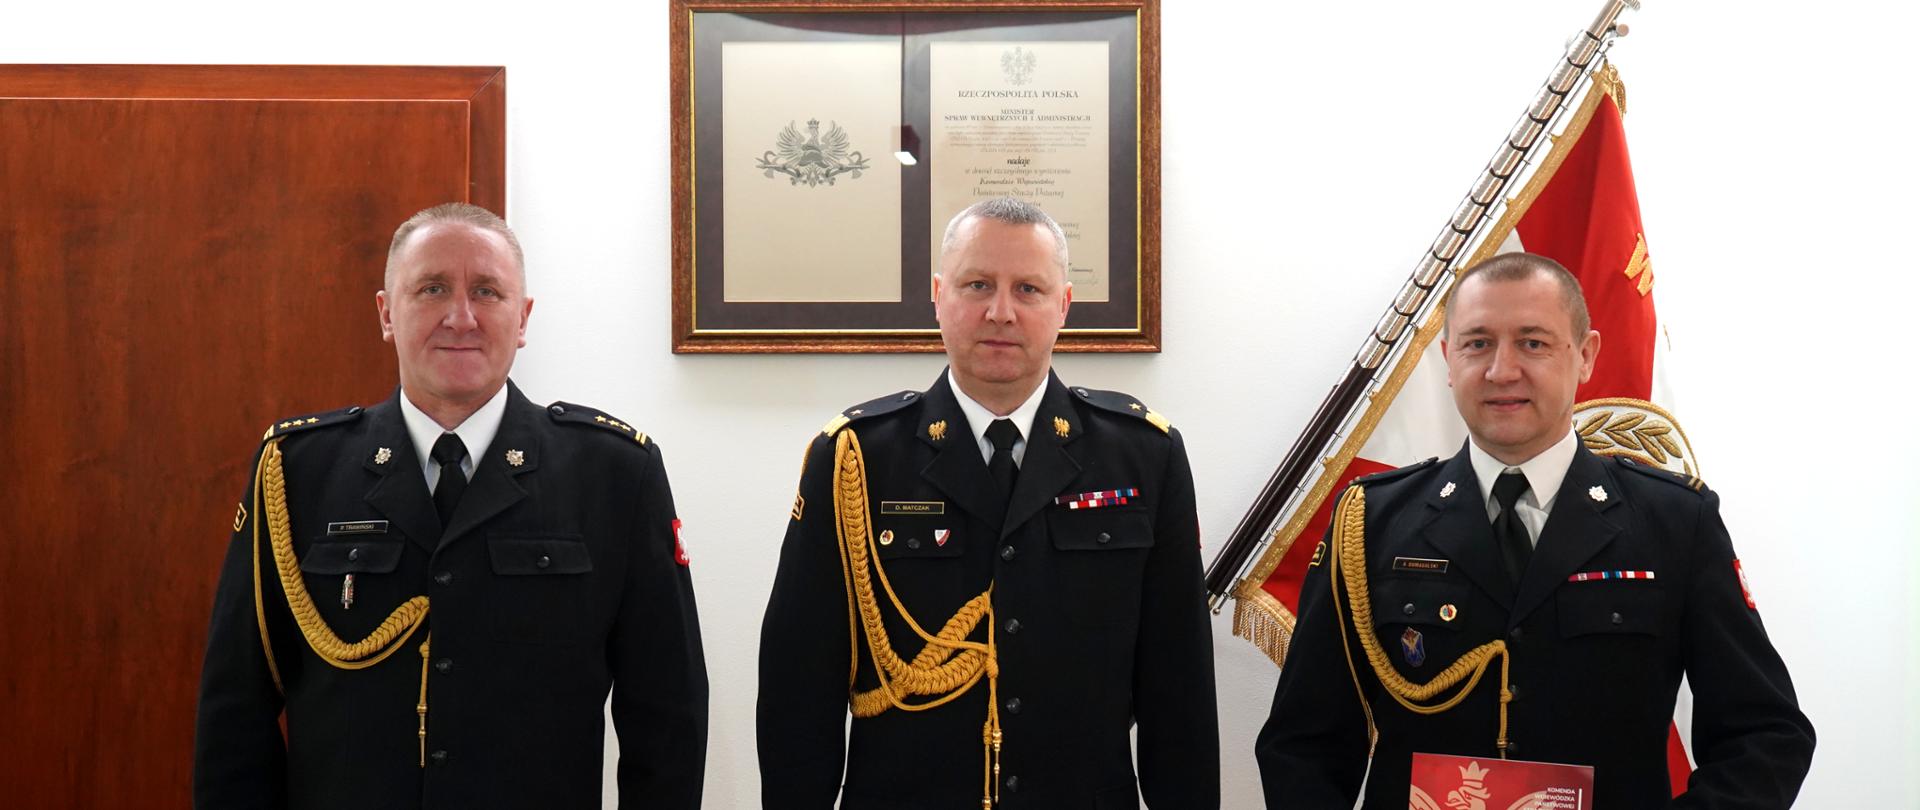 trzech strażaków w ciemnych mundurach ze sznurem stooi obok siebie, w tle sztandar